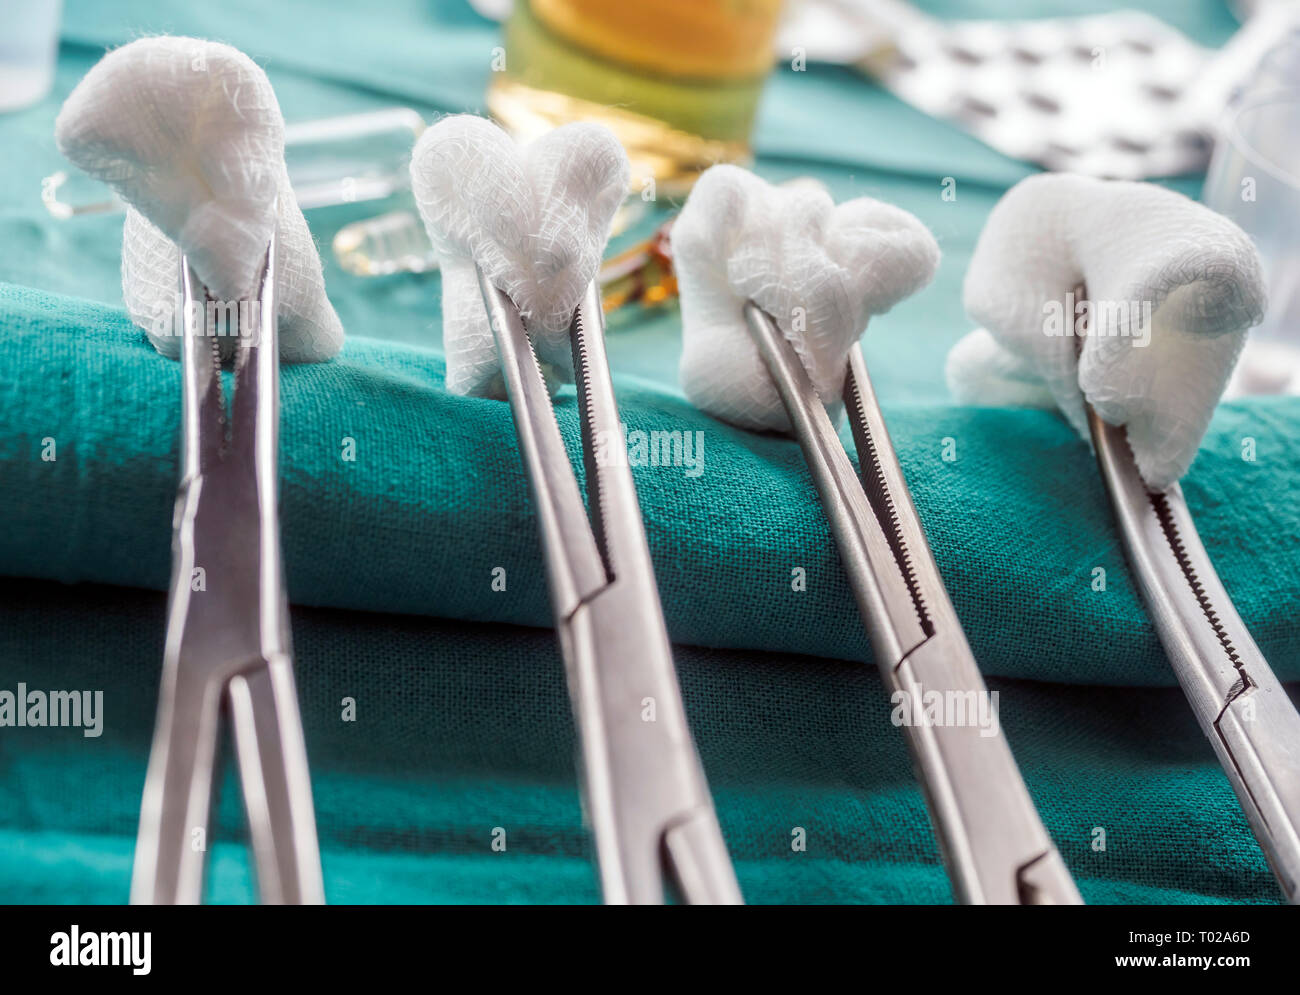 Ciseaux avec torundas chirurgicale dans une salle d'opération, la composition horizontale, conceptual image Banque D'Images